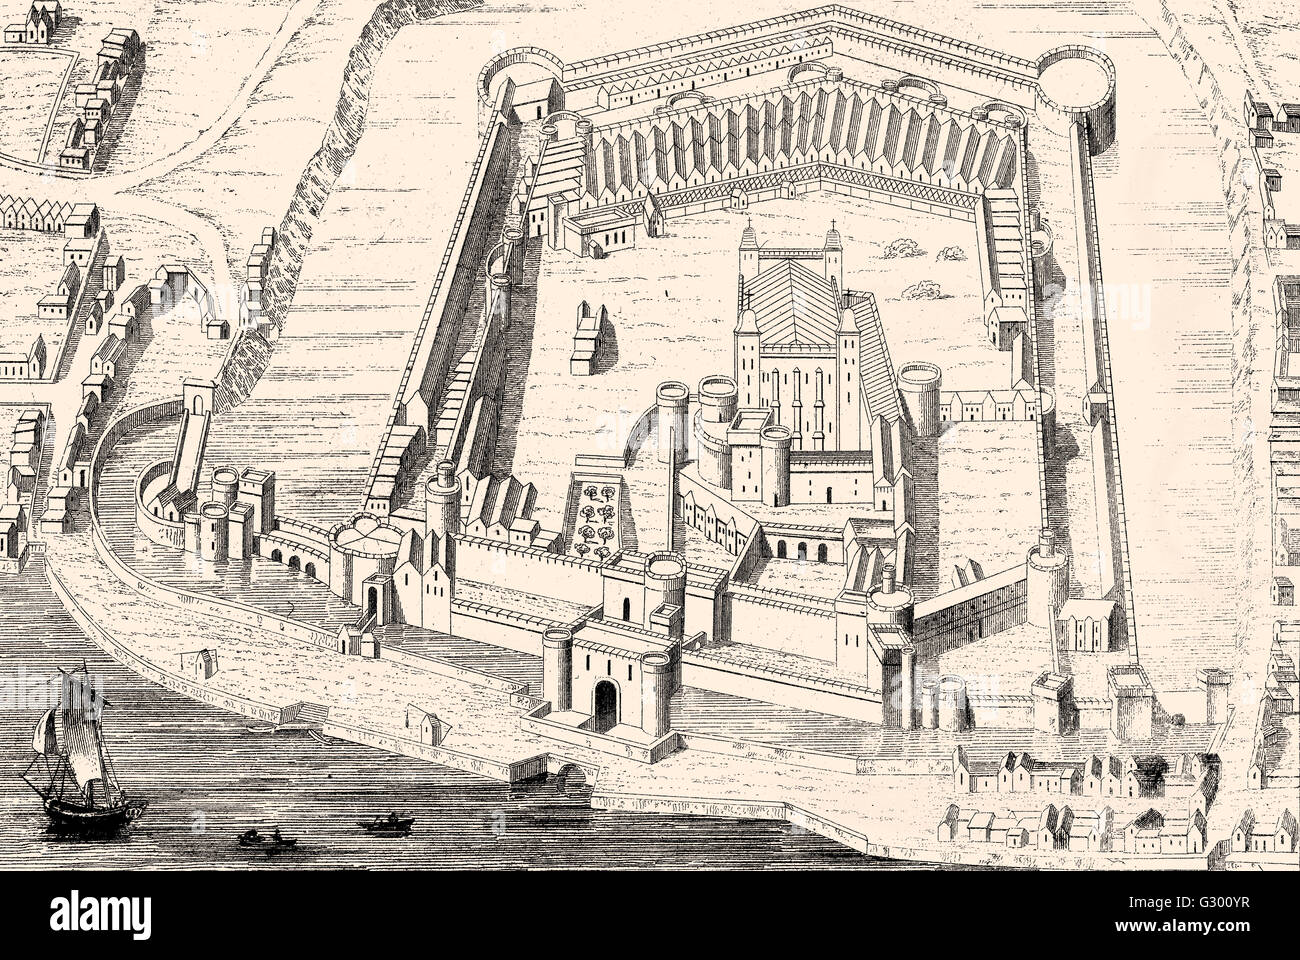 Tower of London, ihrer Majestät königlicher Palast und Festung, eine historische Burg befindet sich am nördlichen Ufer der Themse im cen Stockfoto